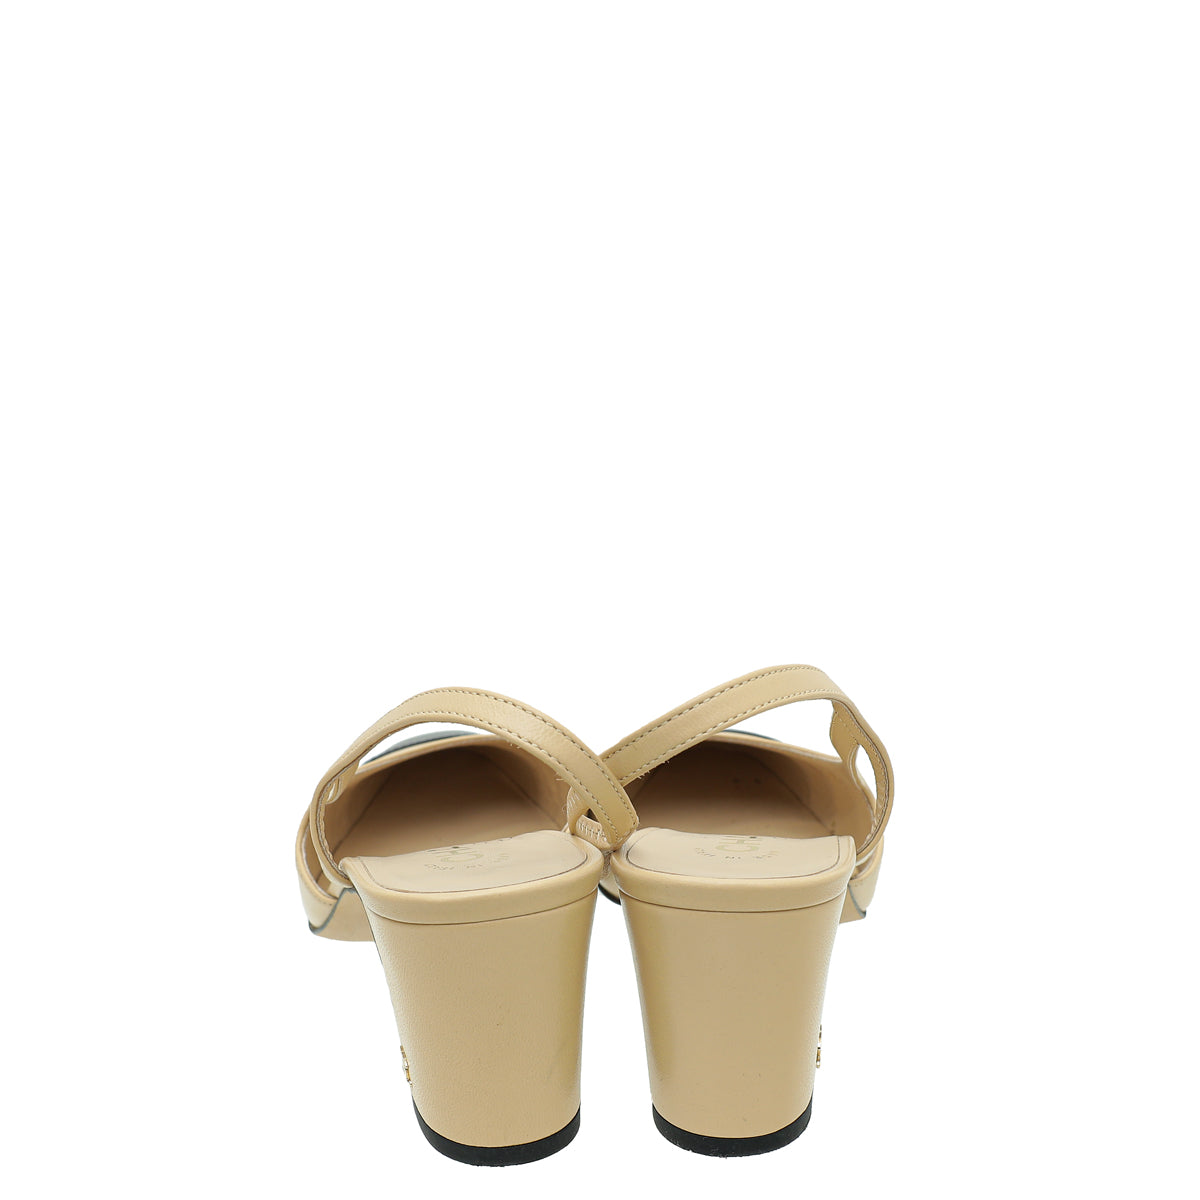 Sell Chanel Slingback Captoe Flats - Nude